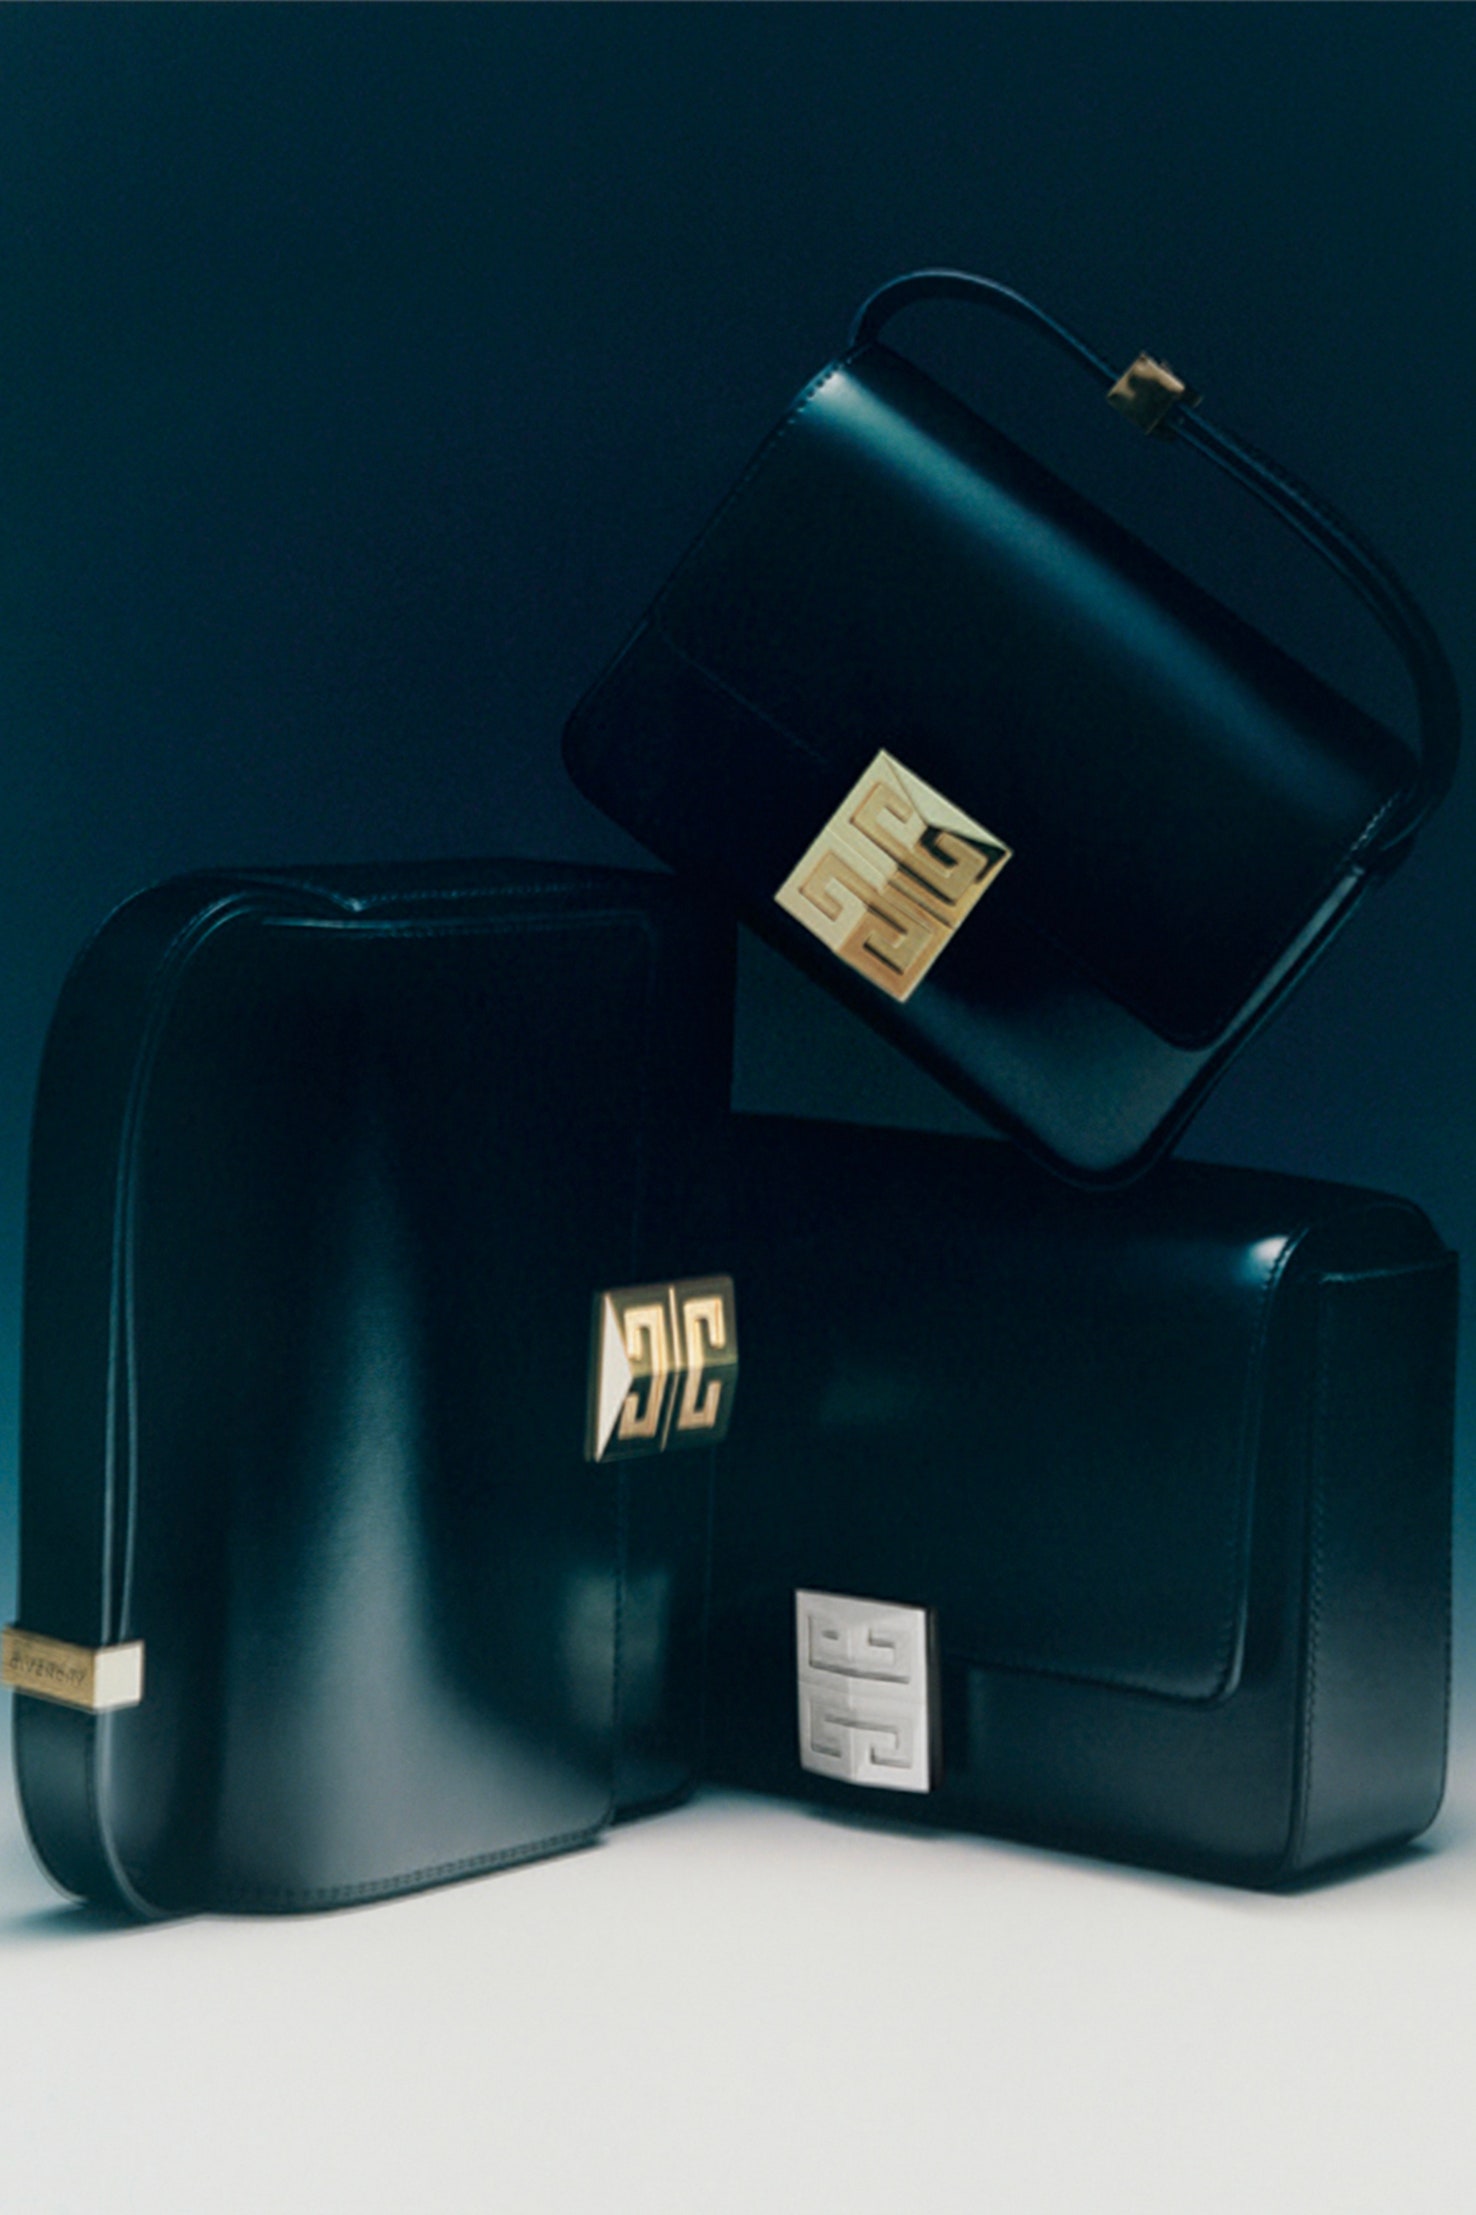 Givenchy 4G: Мэттью Уильямса представил новую сумку для бренда. Что надо о ней знать?